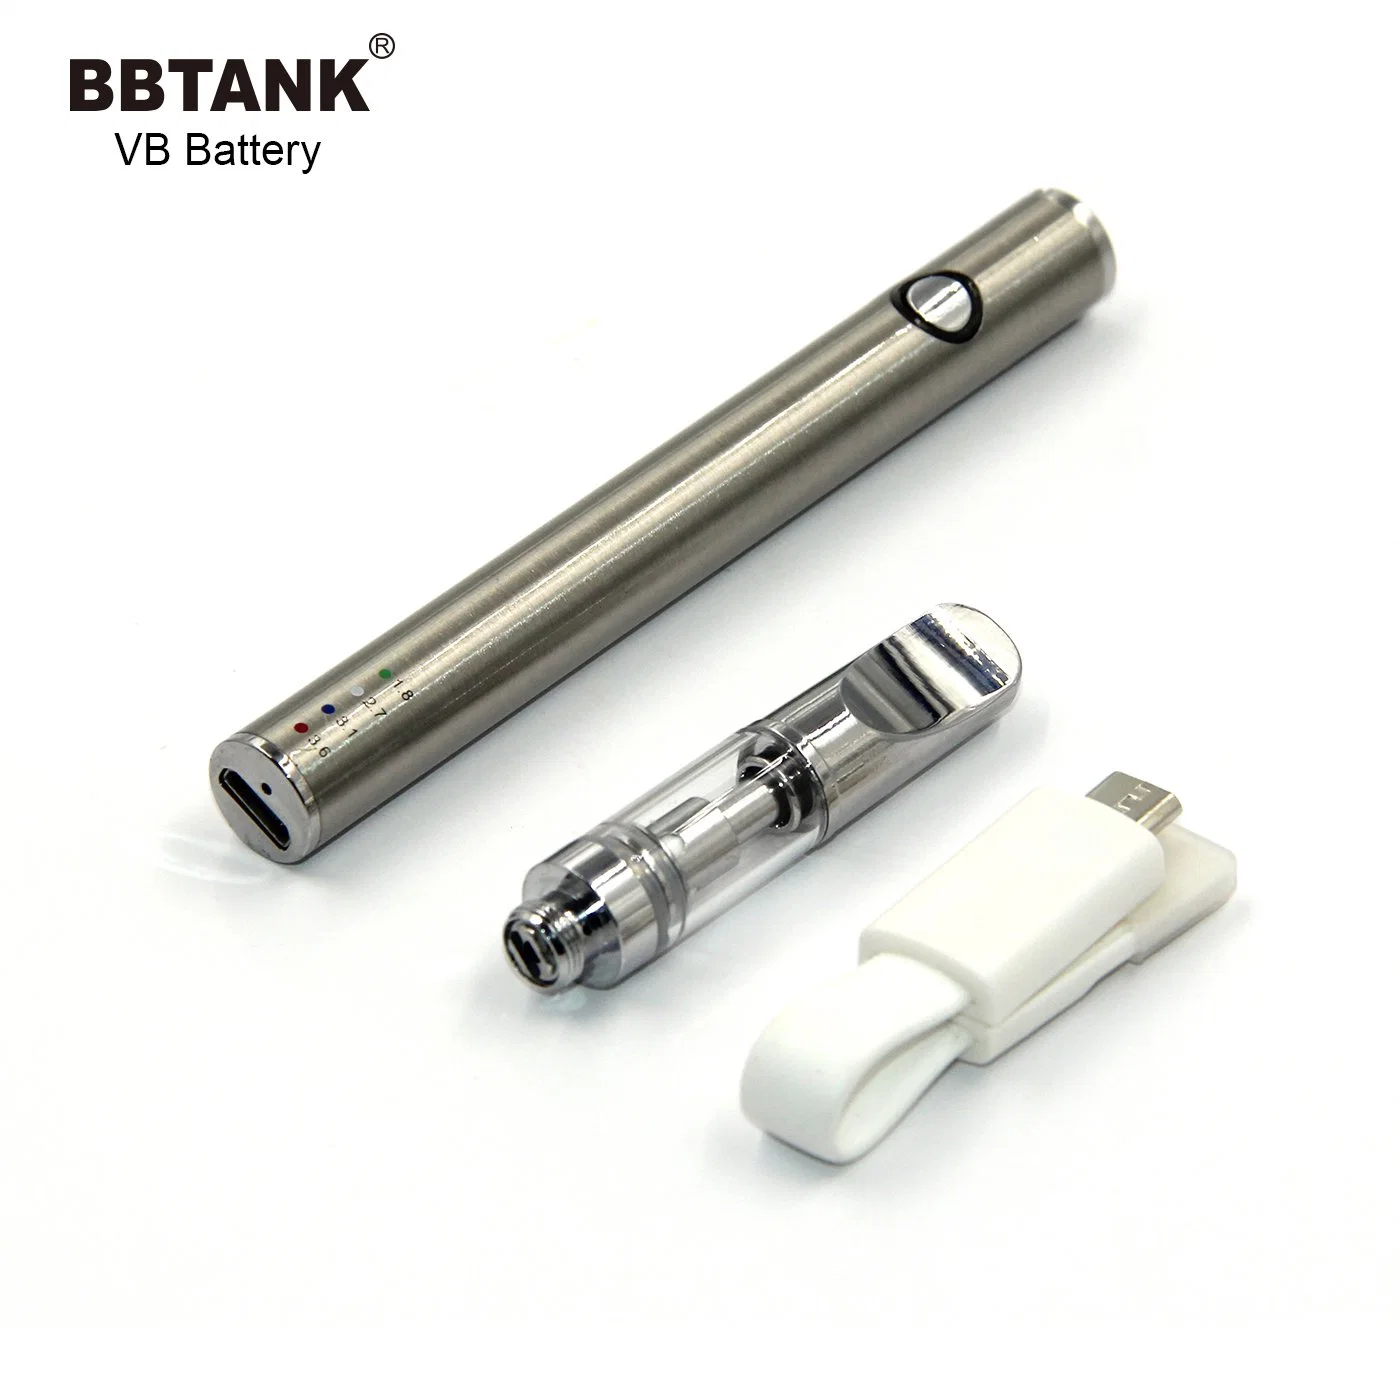 Bbtank Vb 510 аккумуляторной батареи с помощью функции предварительного нагрева с помощью различных параметров напряжения